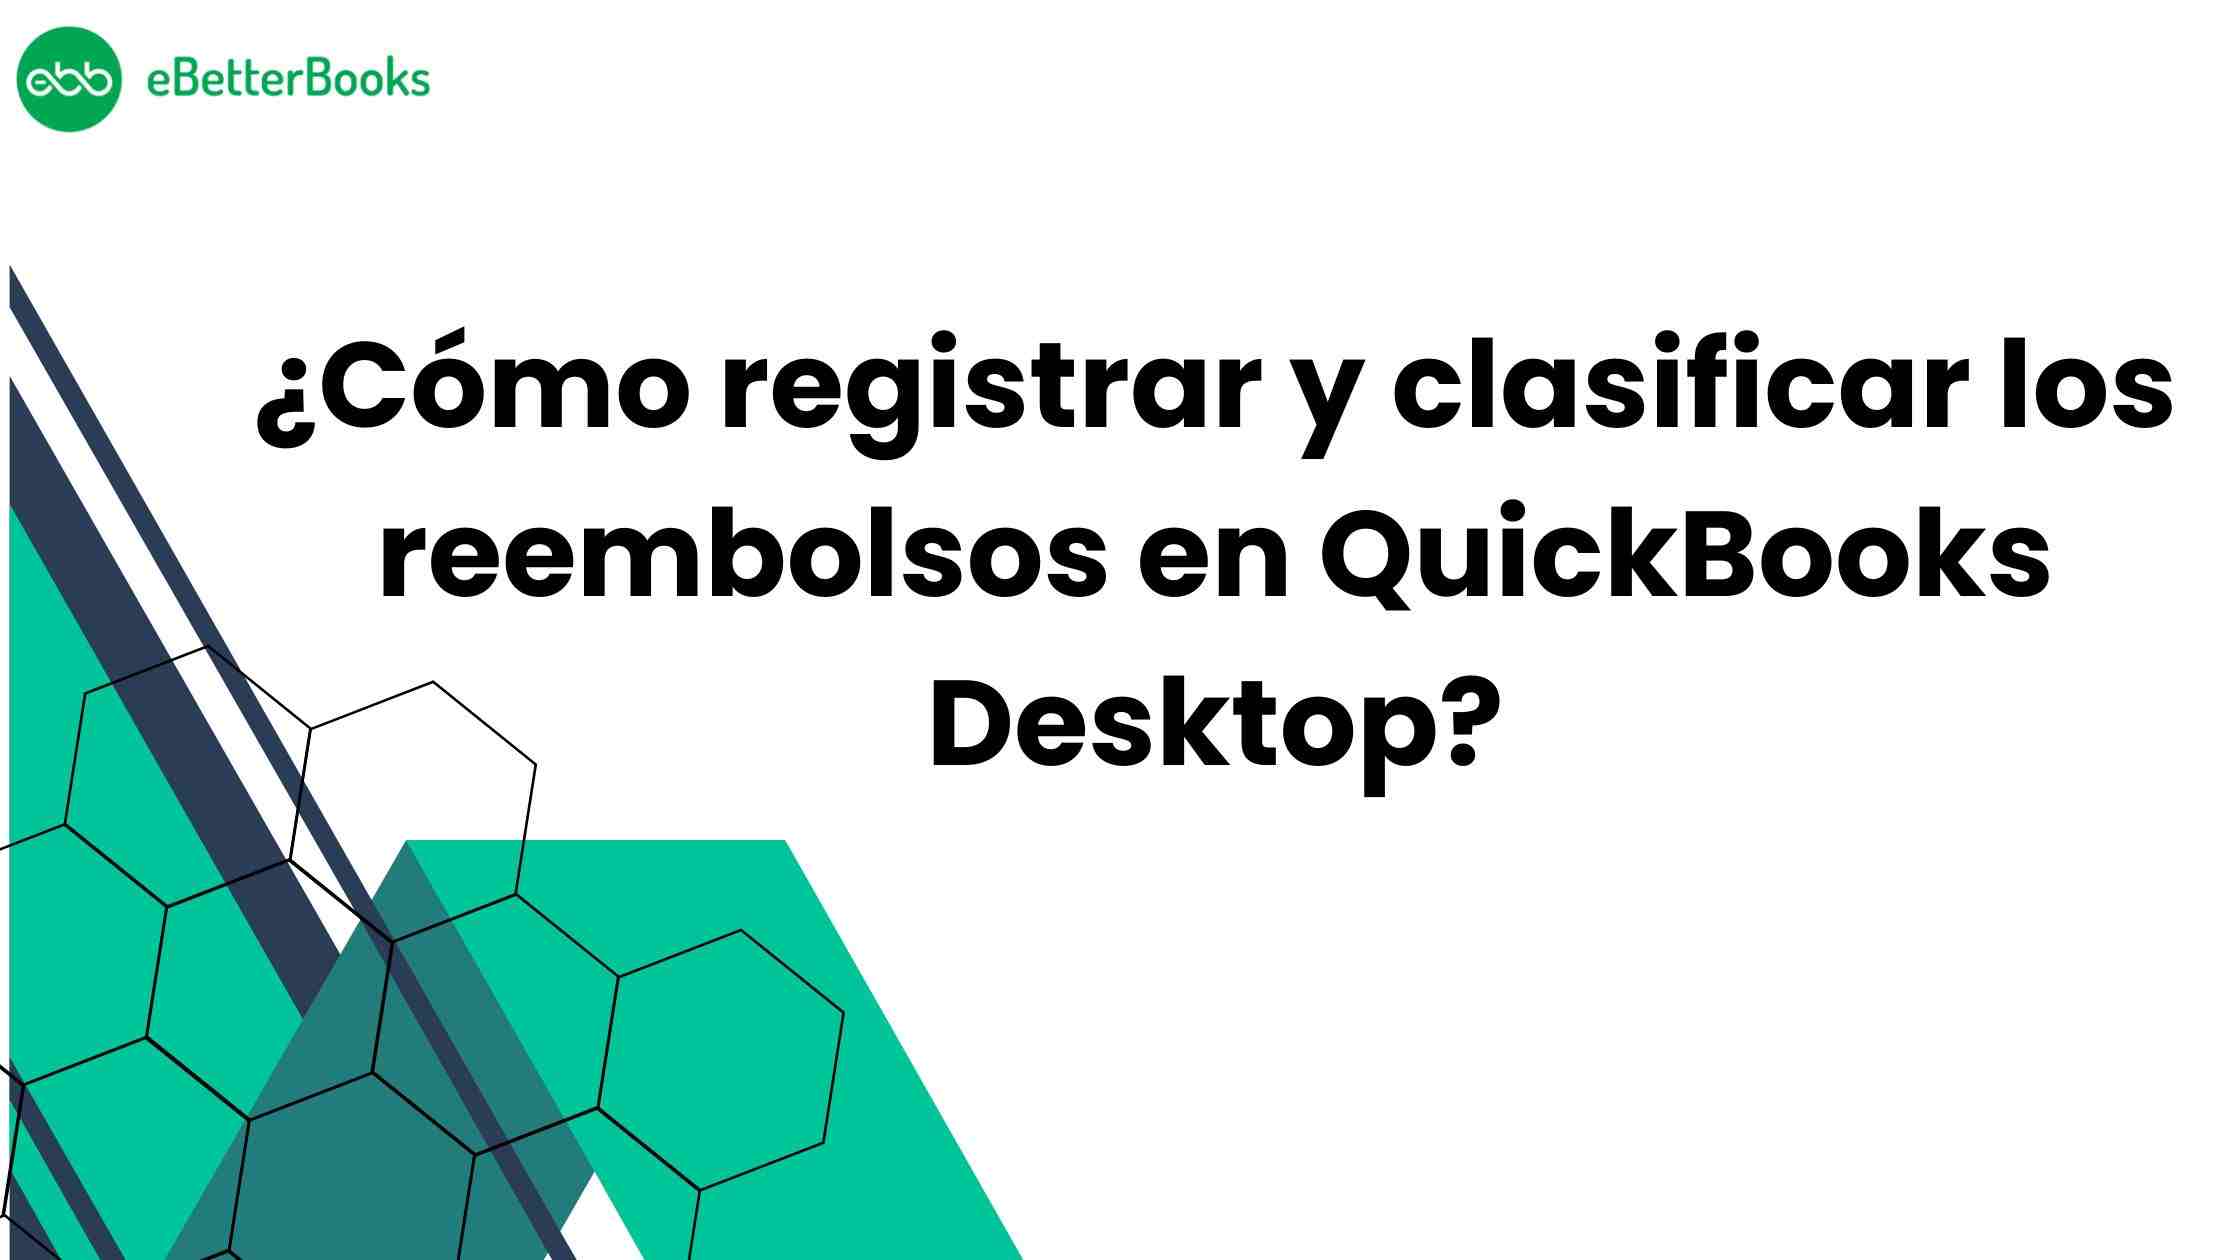 ¿Cómo registrar y clasificar los reembolsos en QuickBooks Desktop?